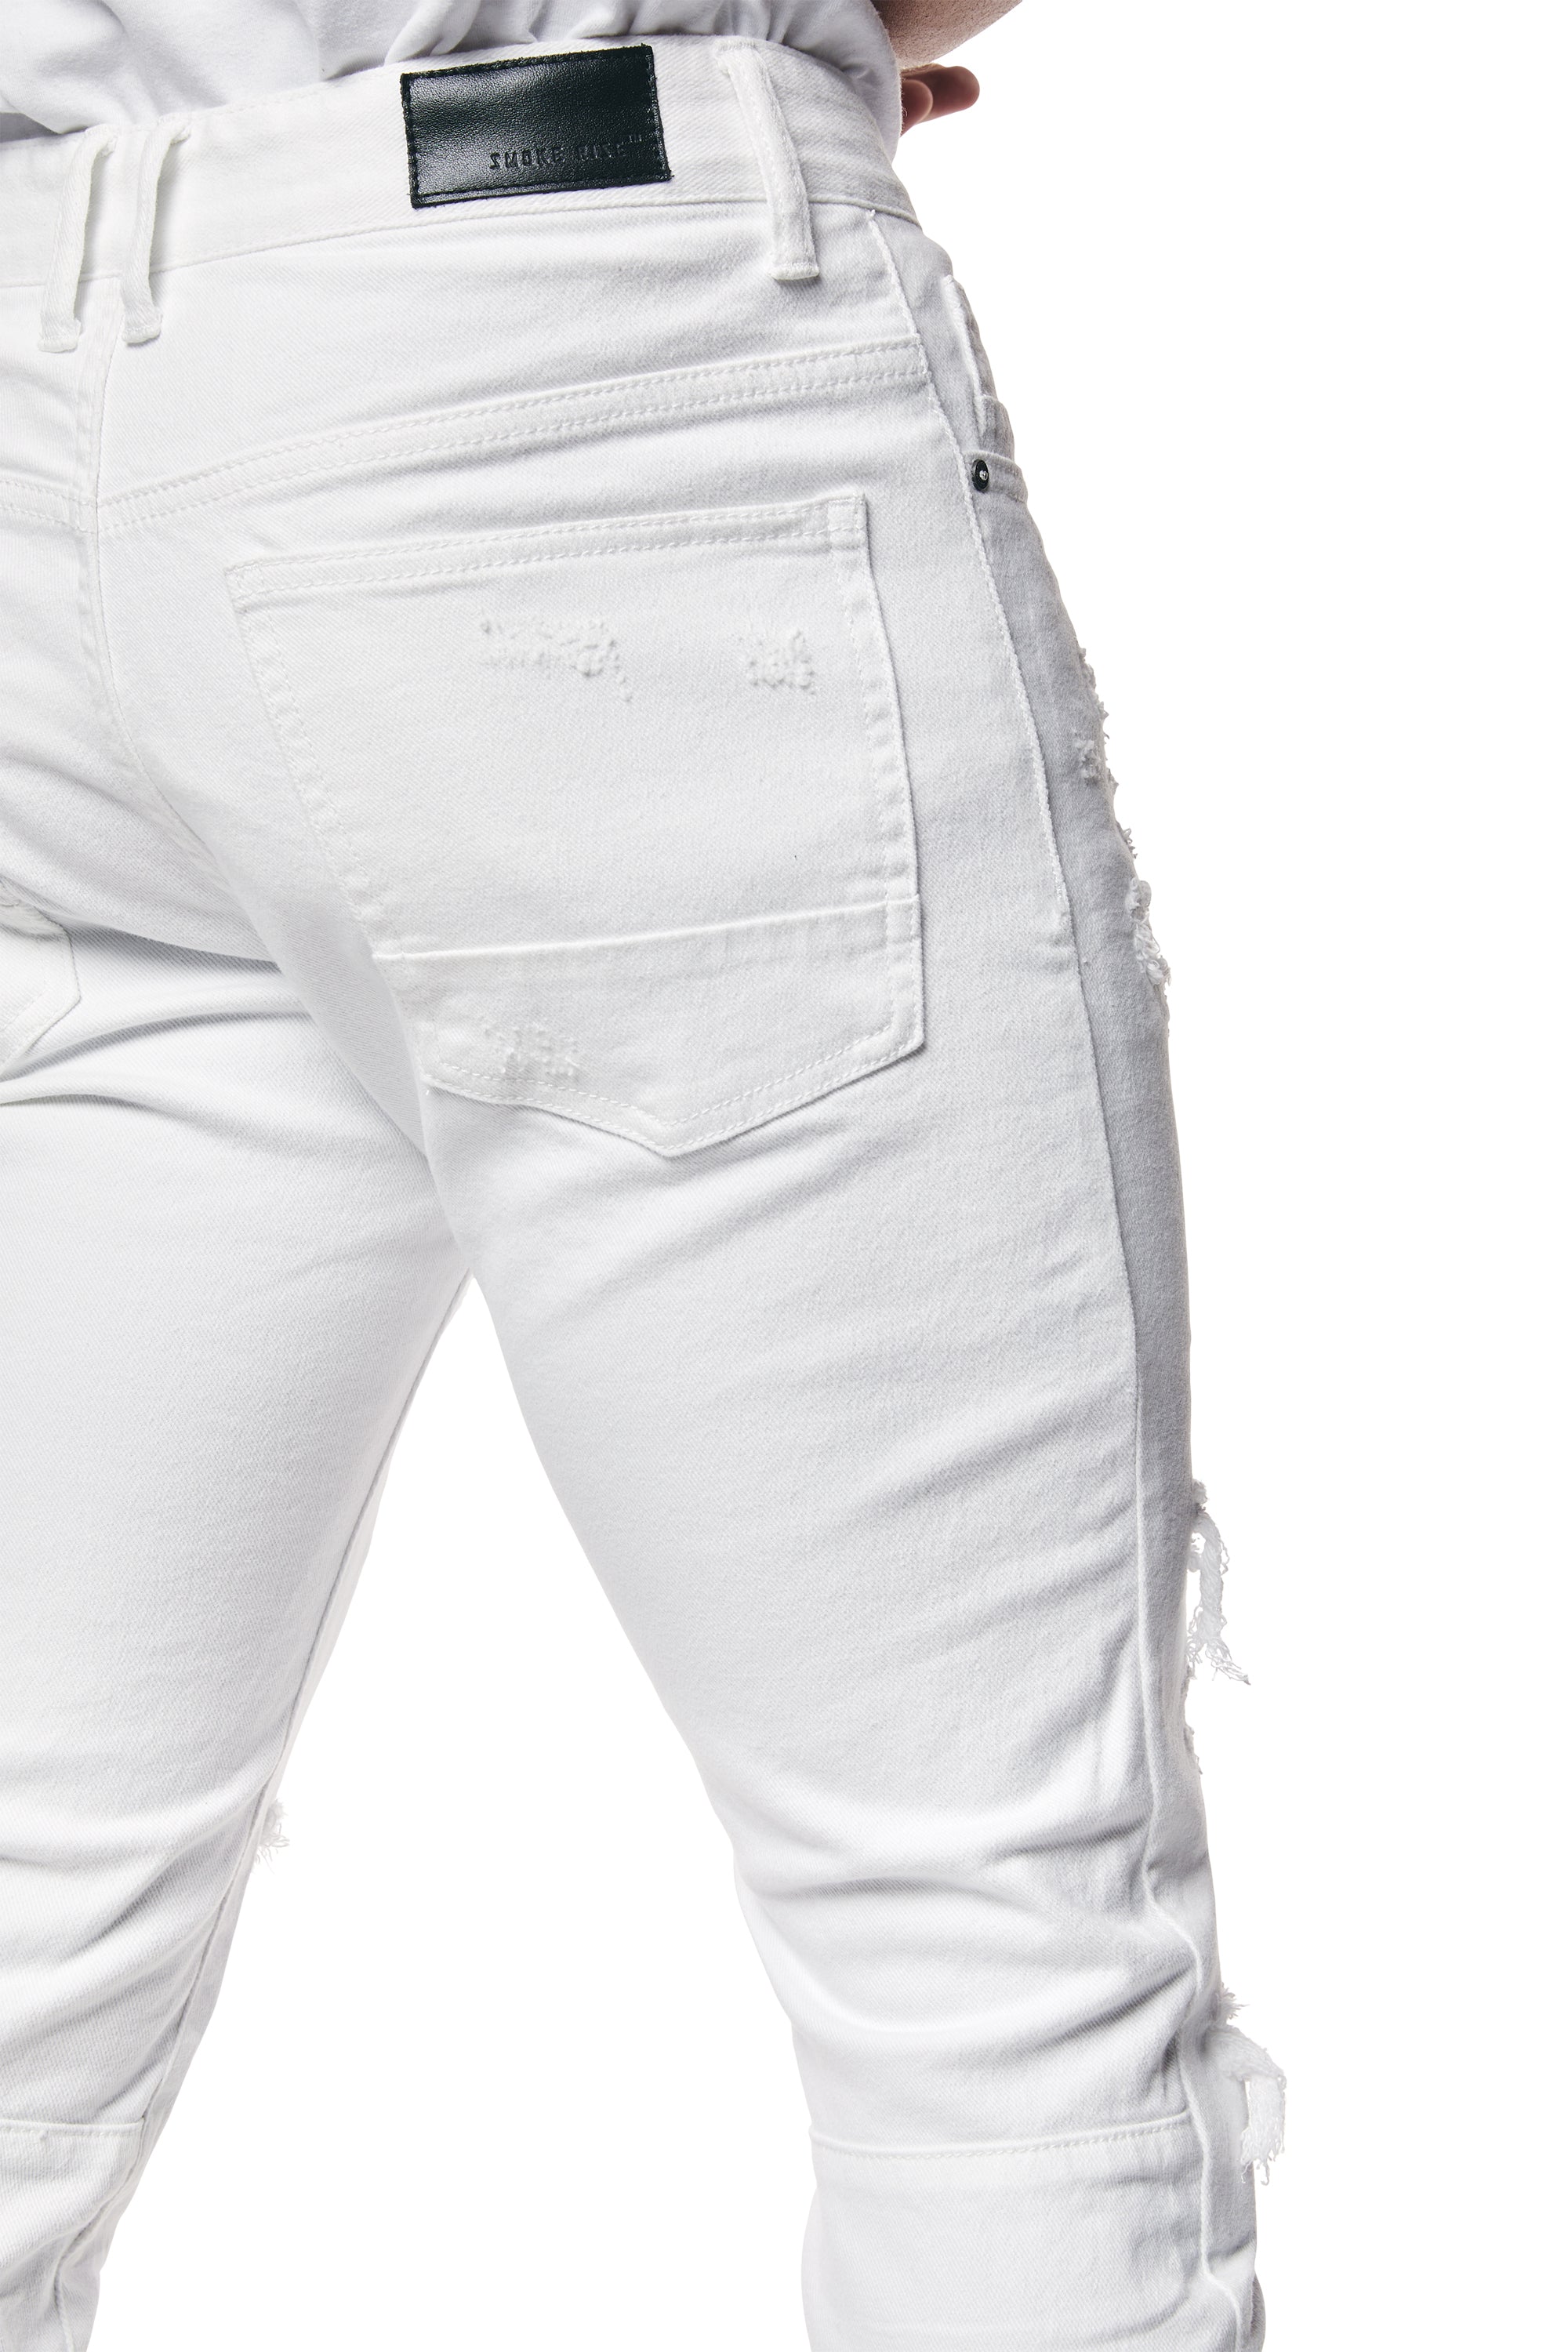 Vintage Washed Slim Denim Jeans - White